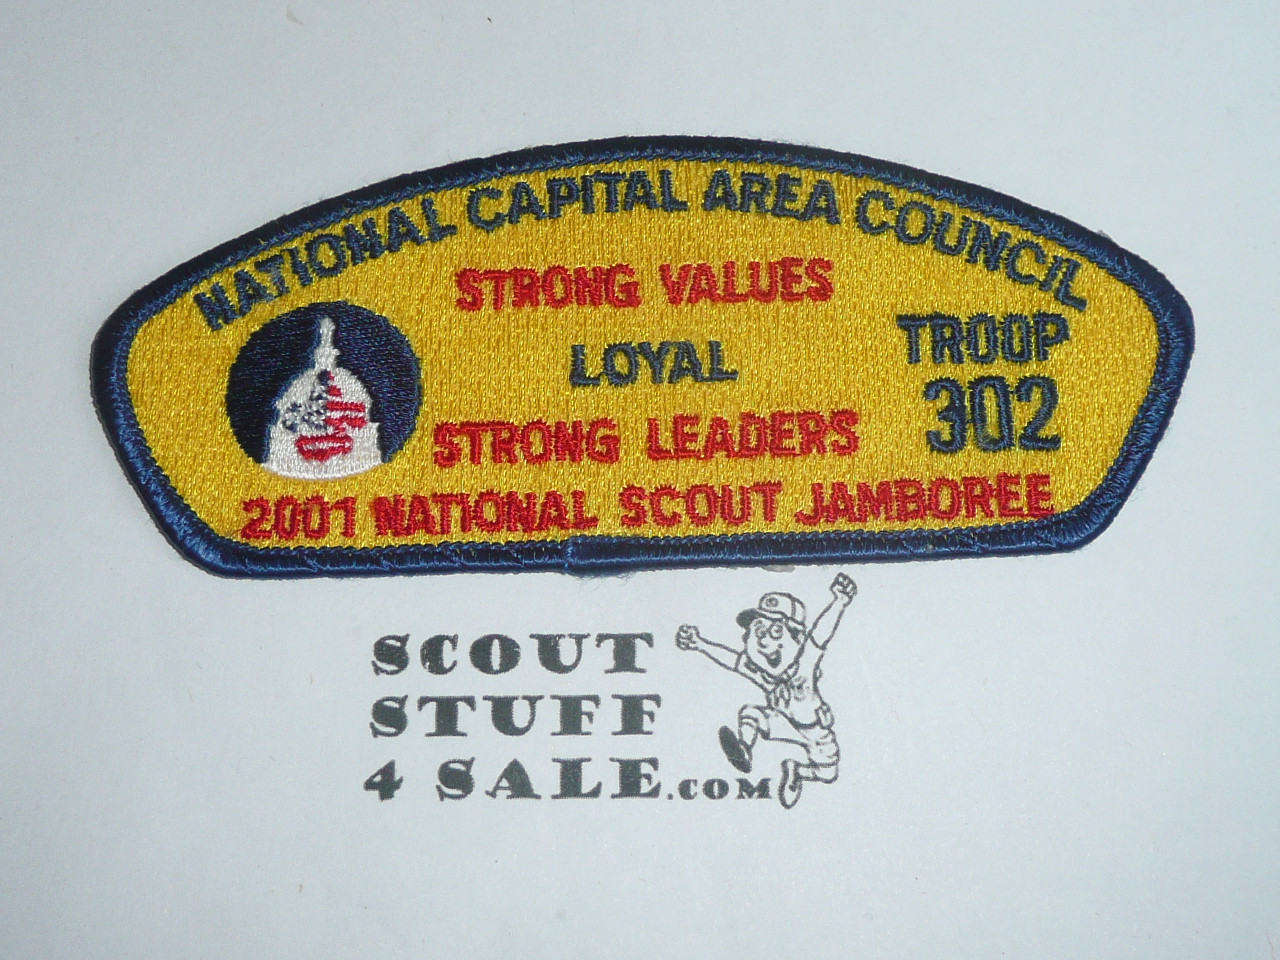 2001 National Jamboree JSP - National Capital Area Council, Troop 302